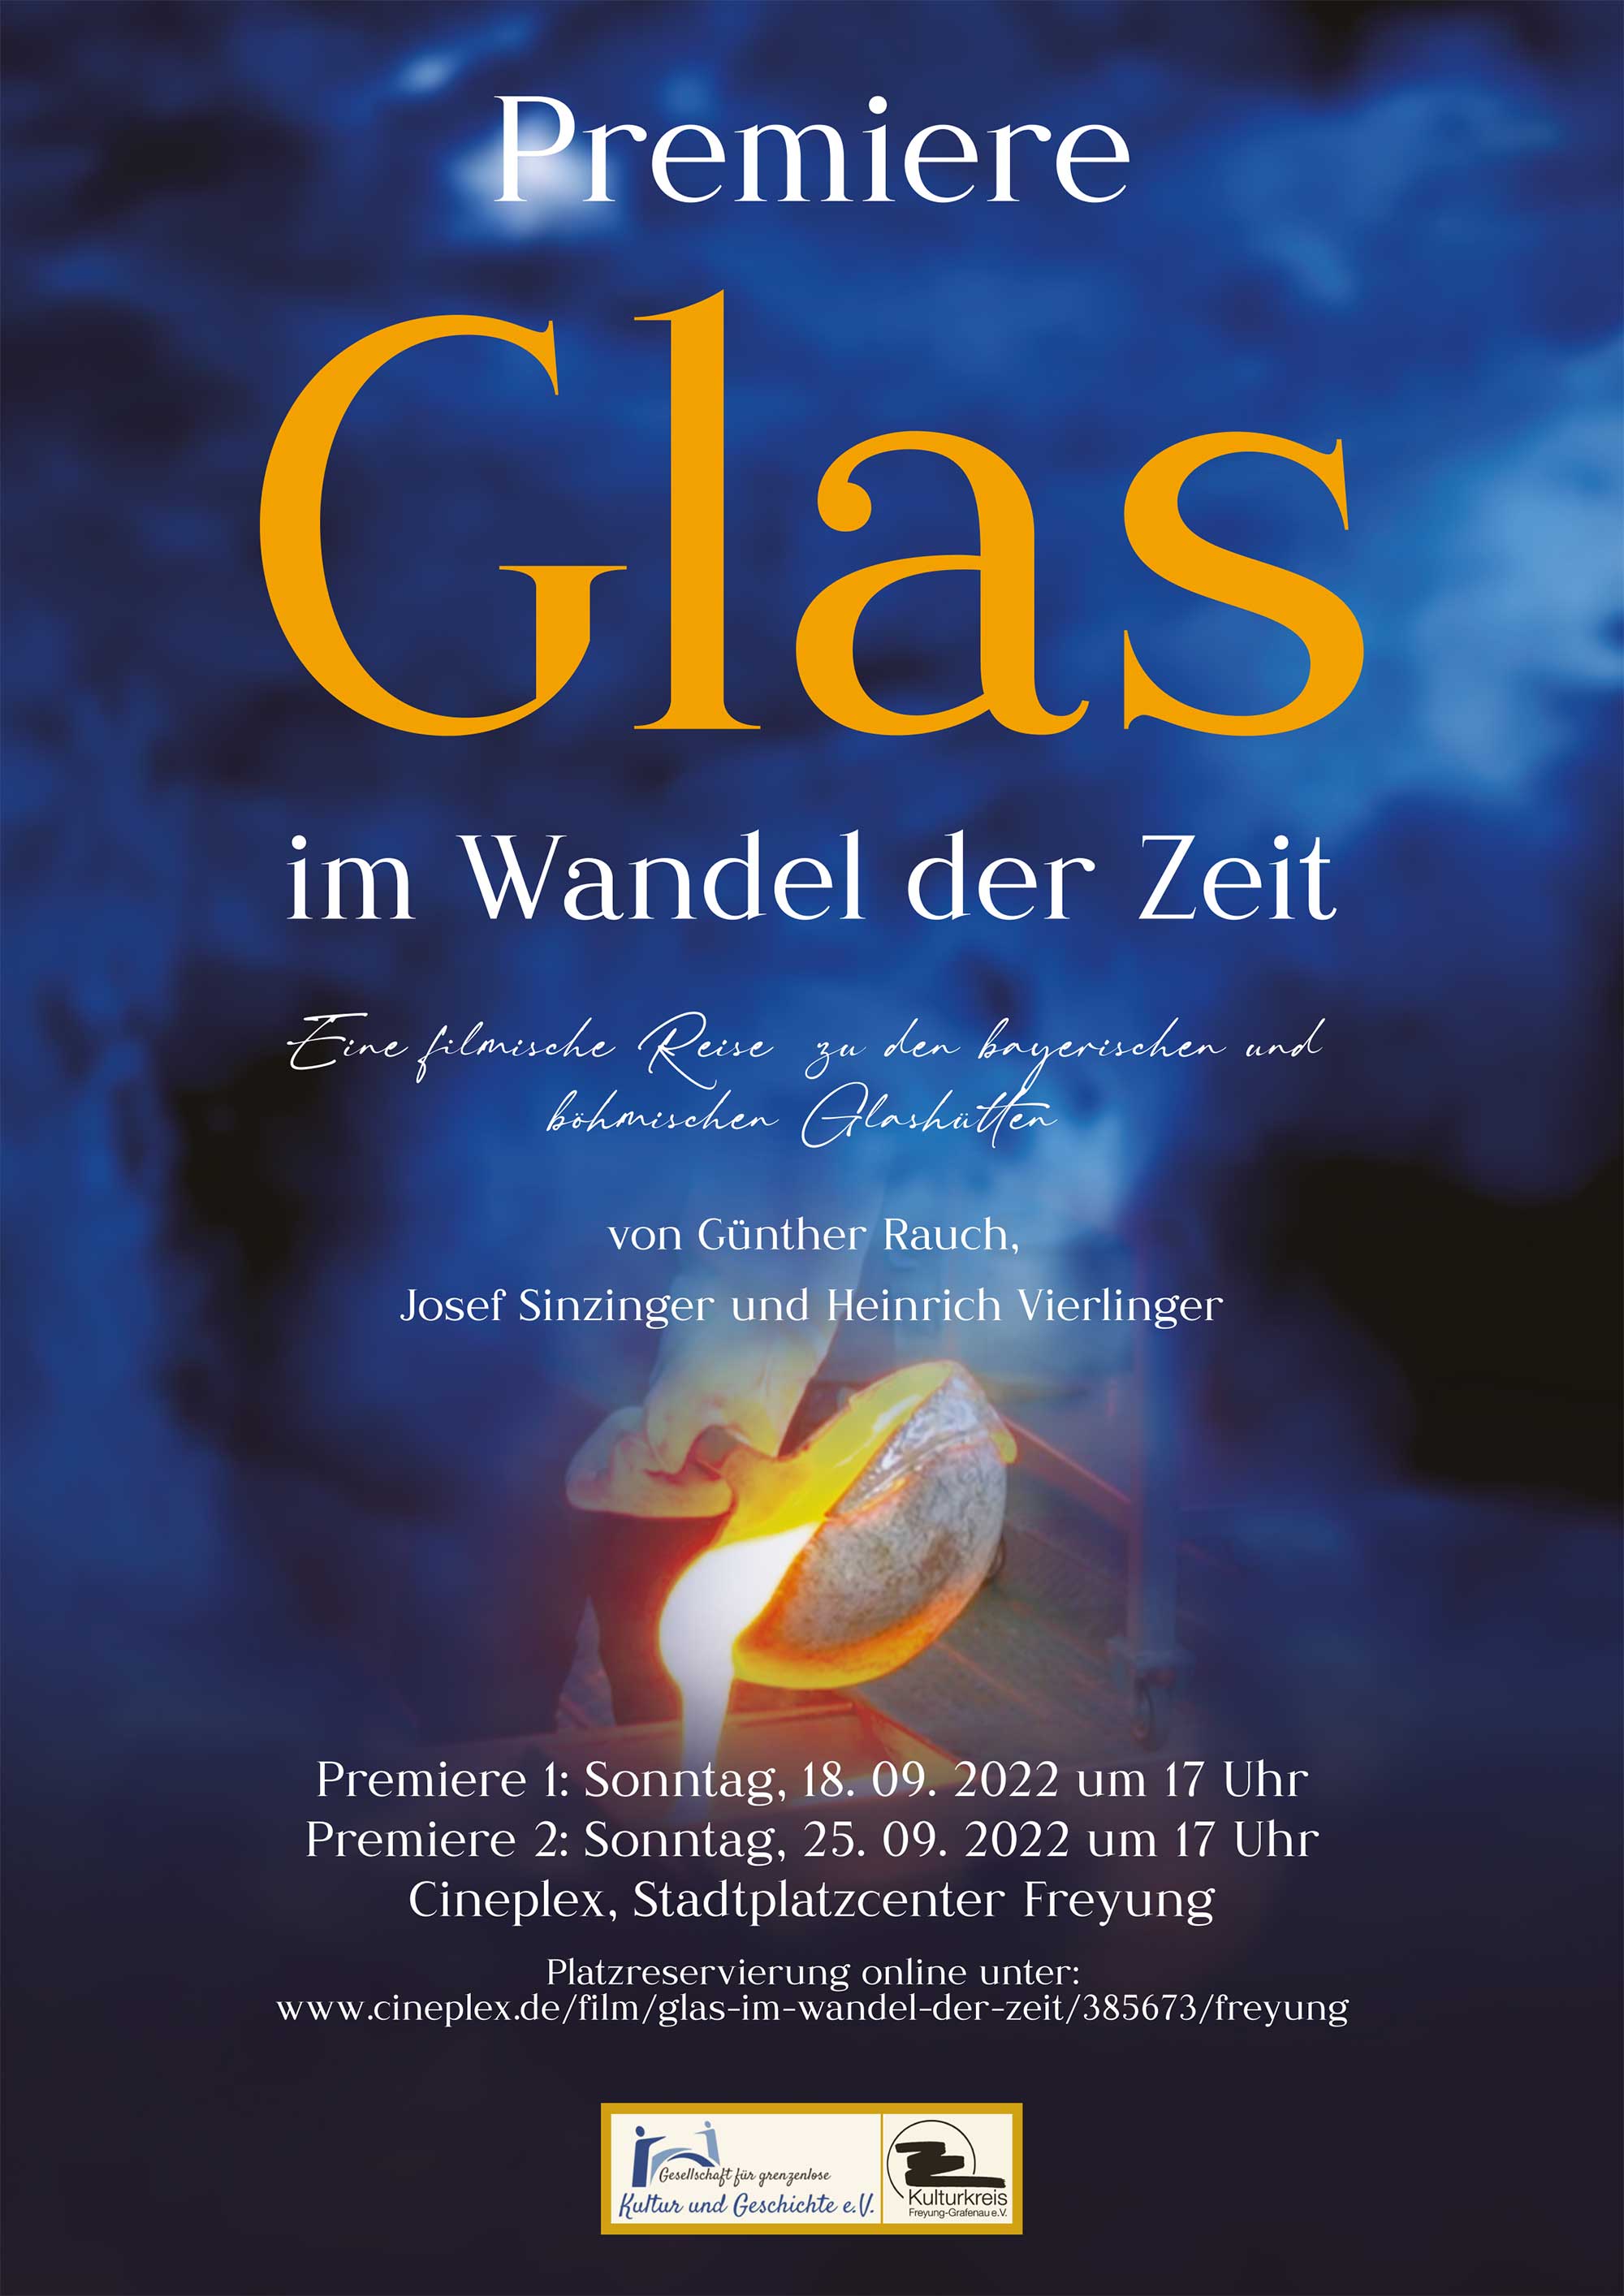 Filmpremiere "Glas im Wandel der Zeit" im September 2022